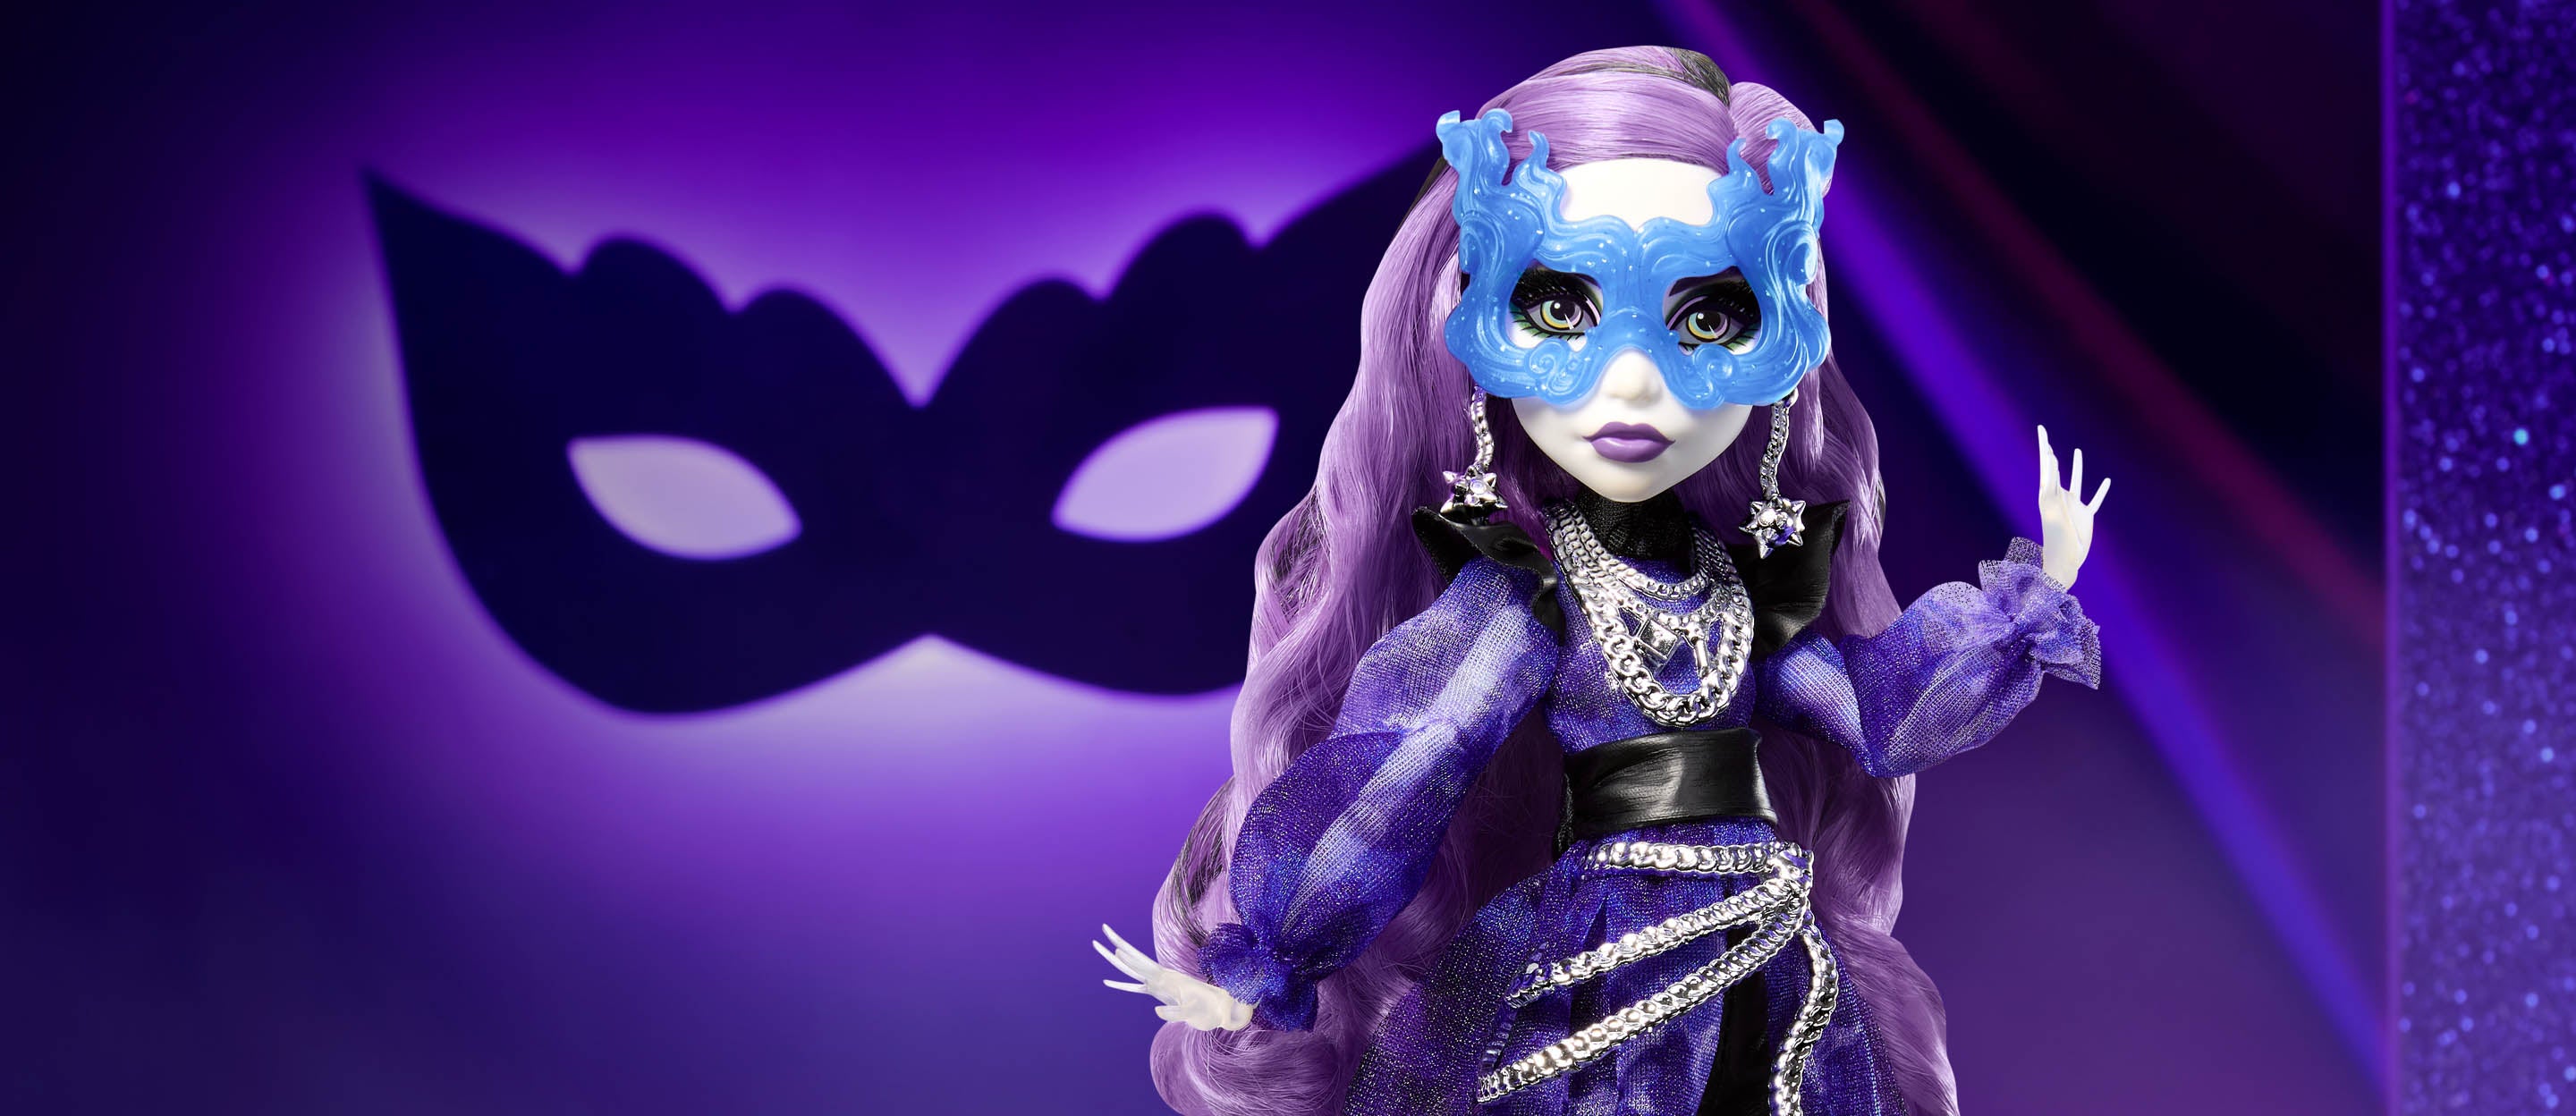 My toys,loves and fashions: Monster High - Colecção Originais Parte I